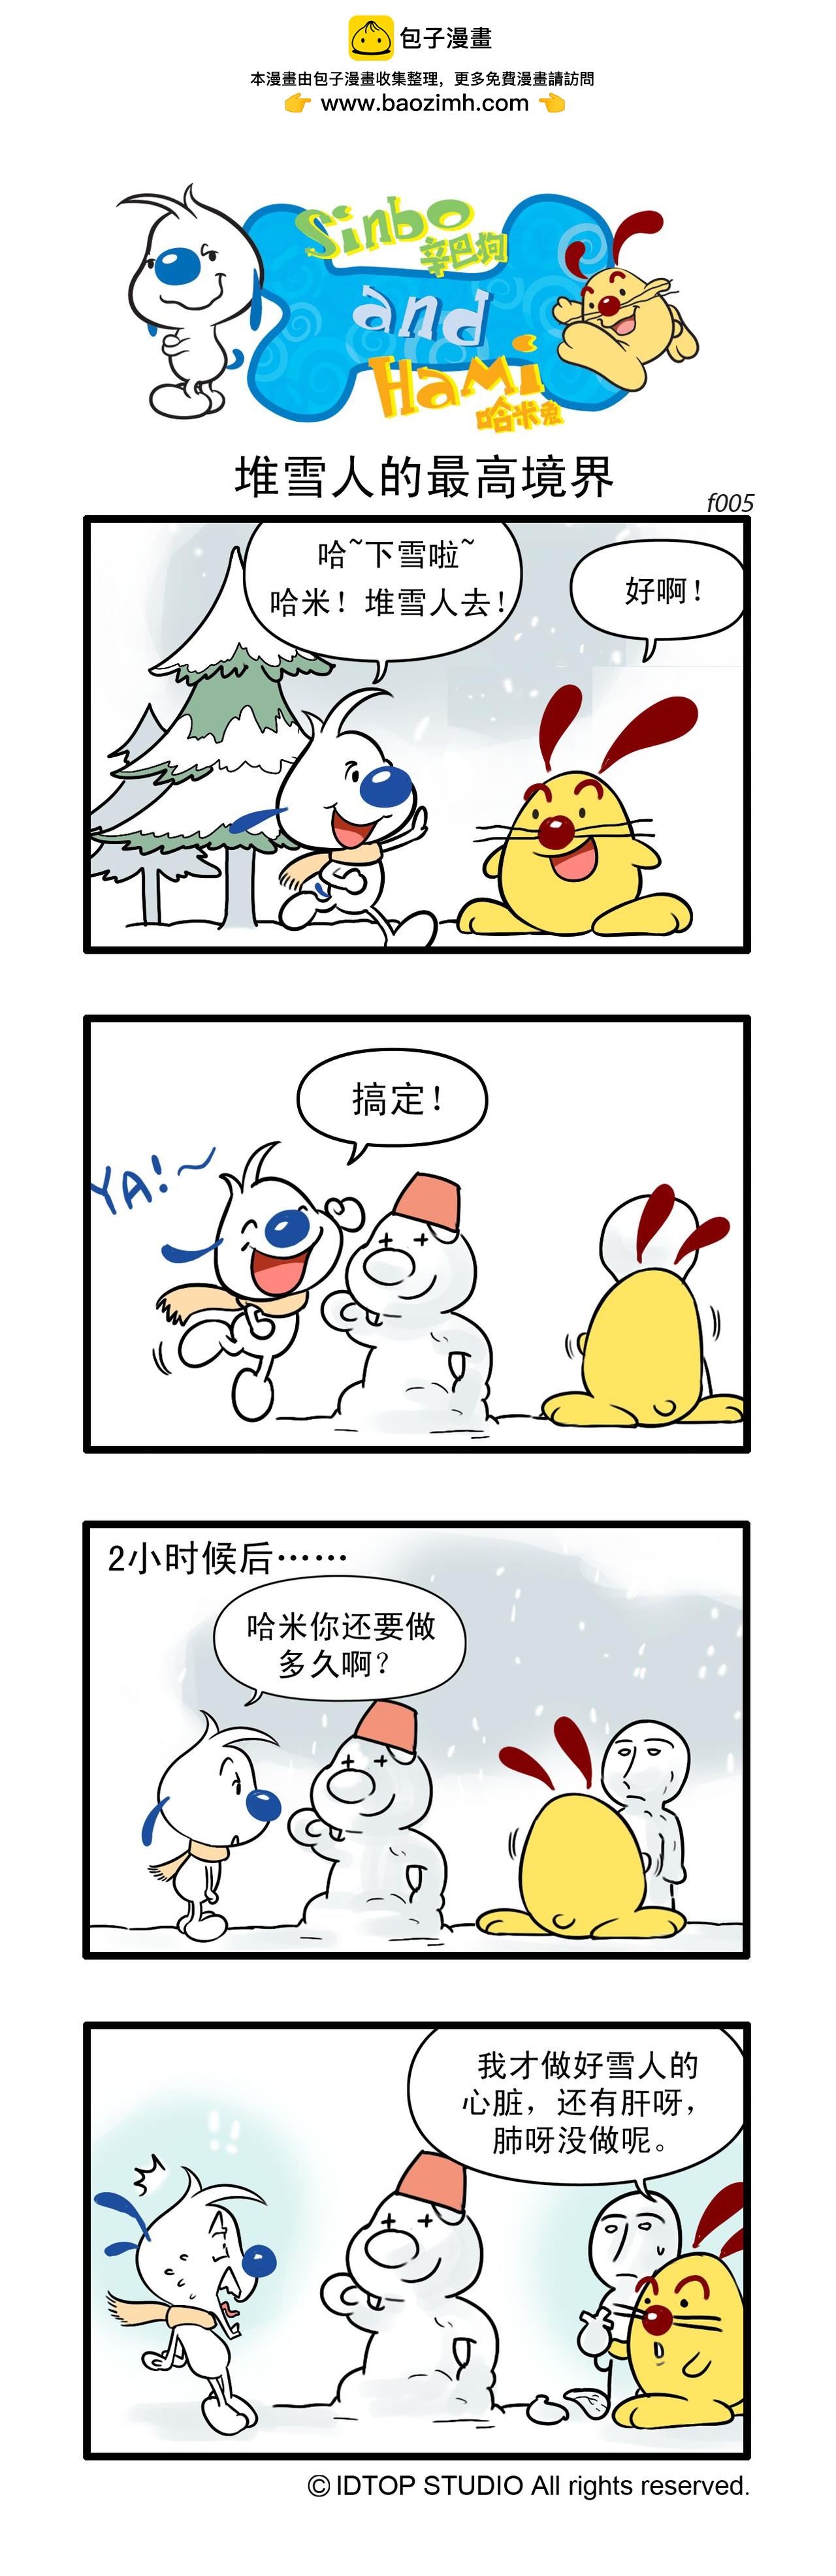 辛巴狗日常漫畫 - 多格2 - 1